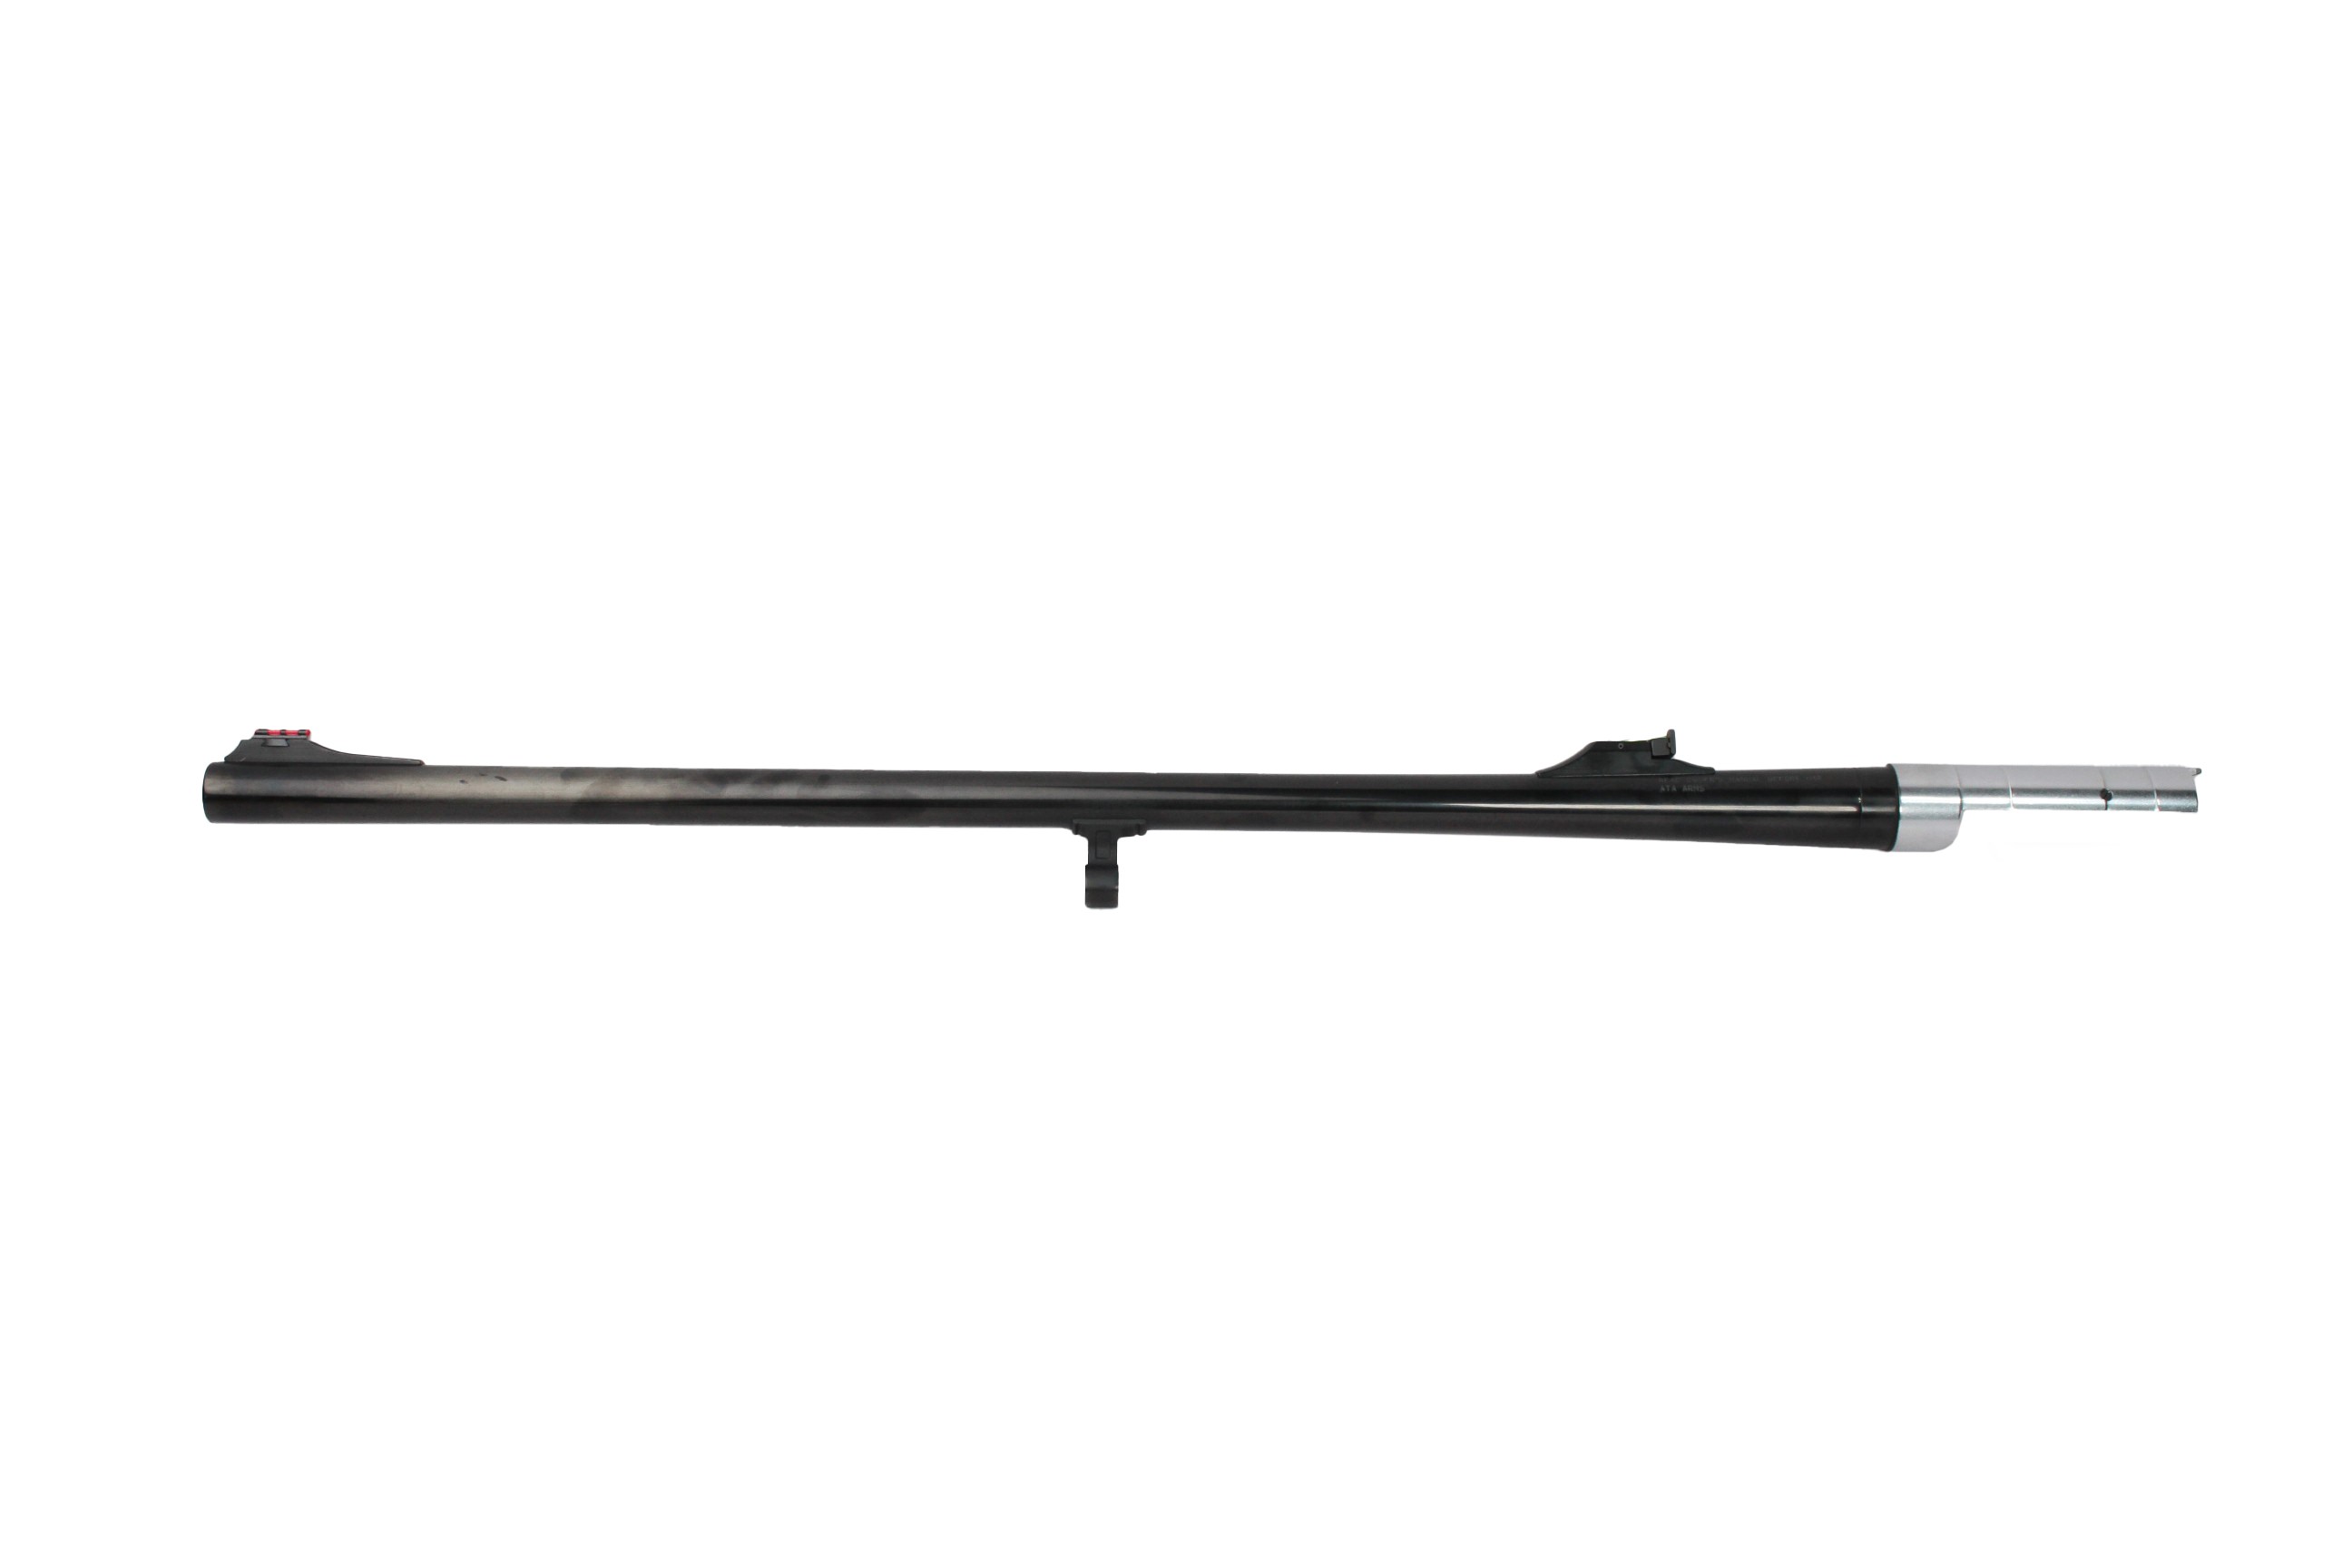 Ствол Ata Arms Neo 12R глянцевый 610мм длинный хвостовик - фото 1